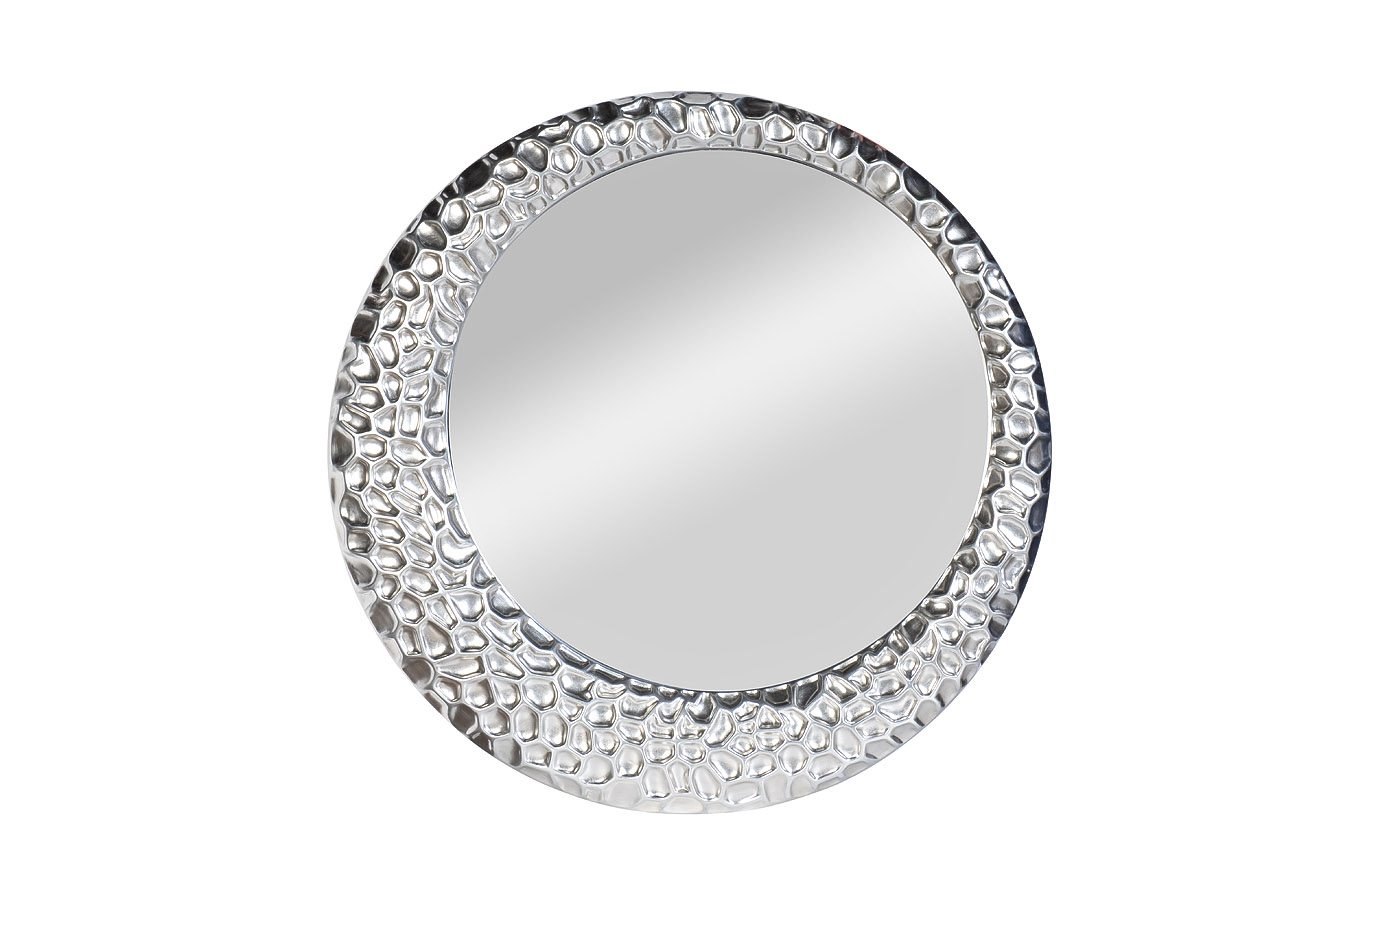 Зеркало круглое в серебряной раме 50SX-1020